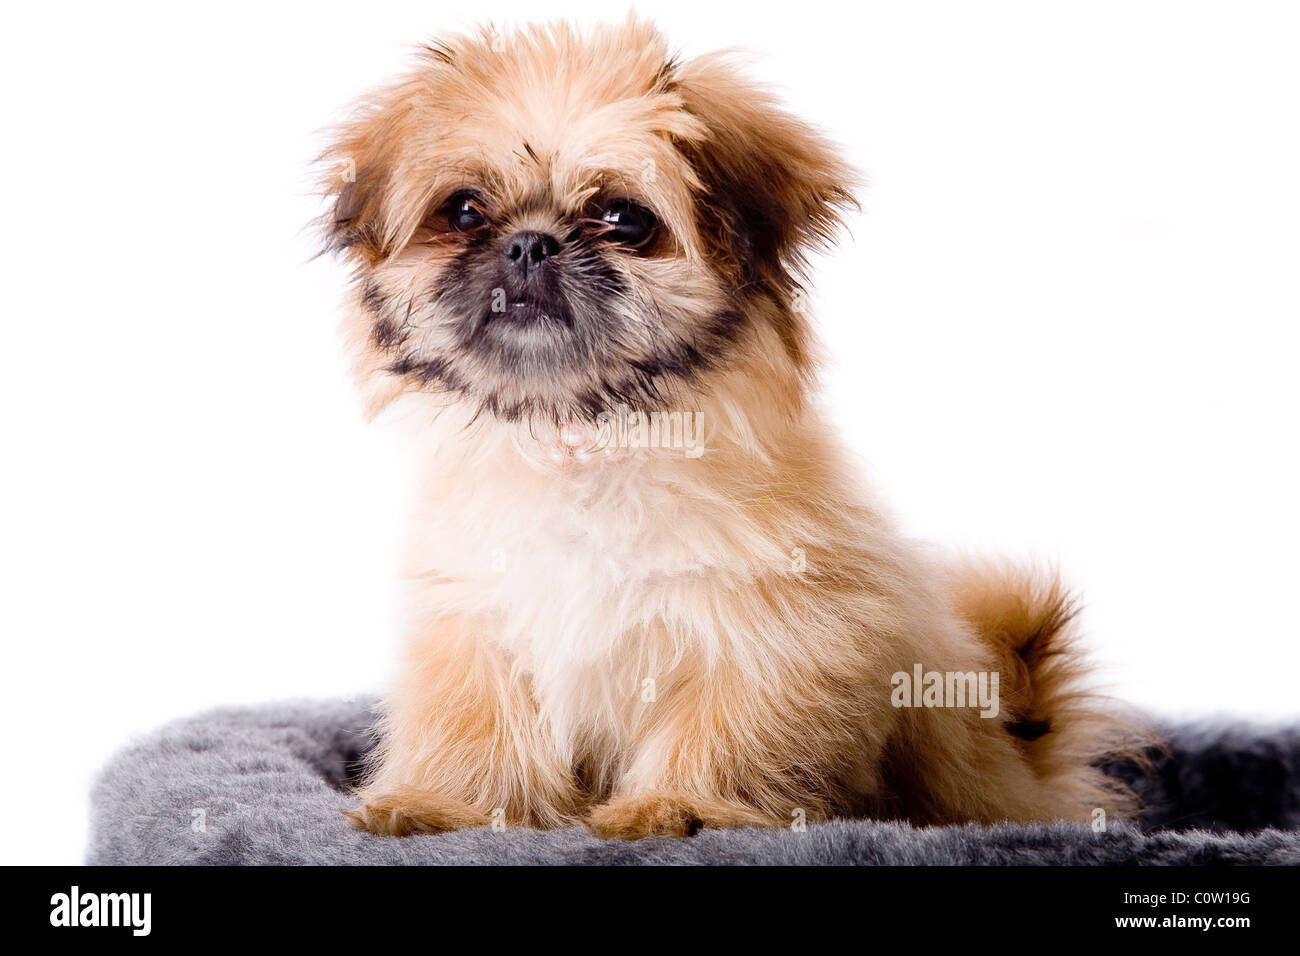 Cute little pekingese dog isolated on white Stock Photo